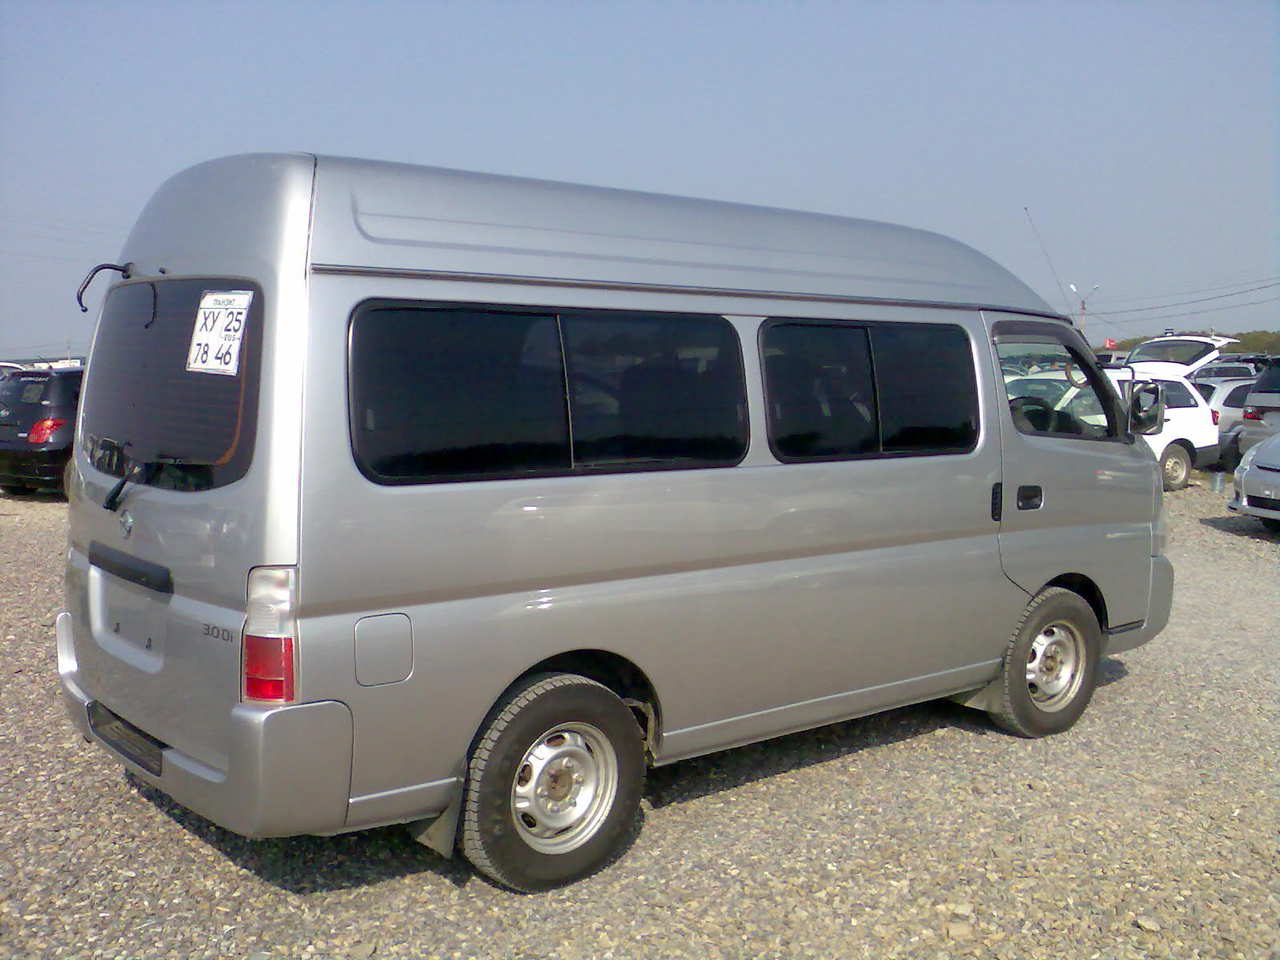 Nissan Caravan 2001. Nissan Caravan 2001 long. Ниссан Караван 4 ВД. Nissan Caravan 2001 салон.